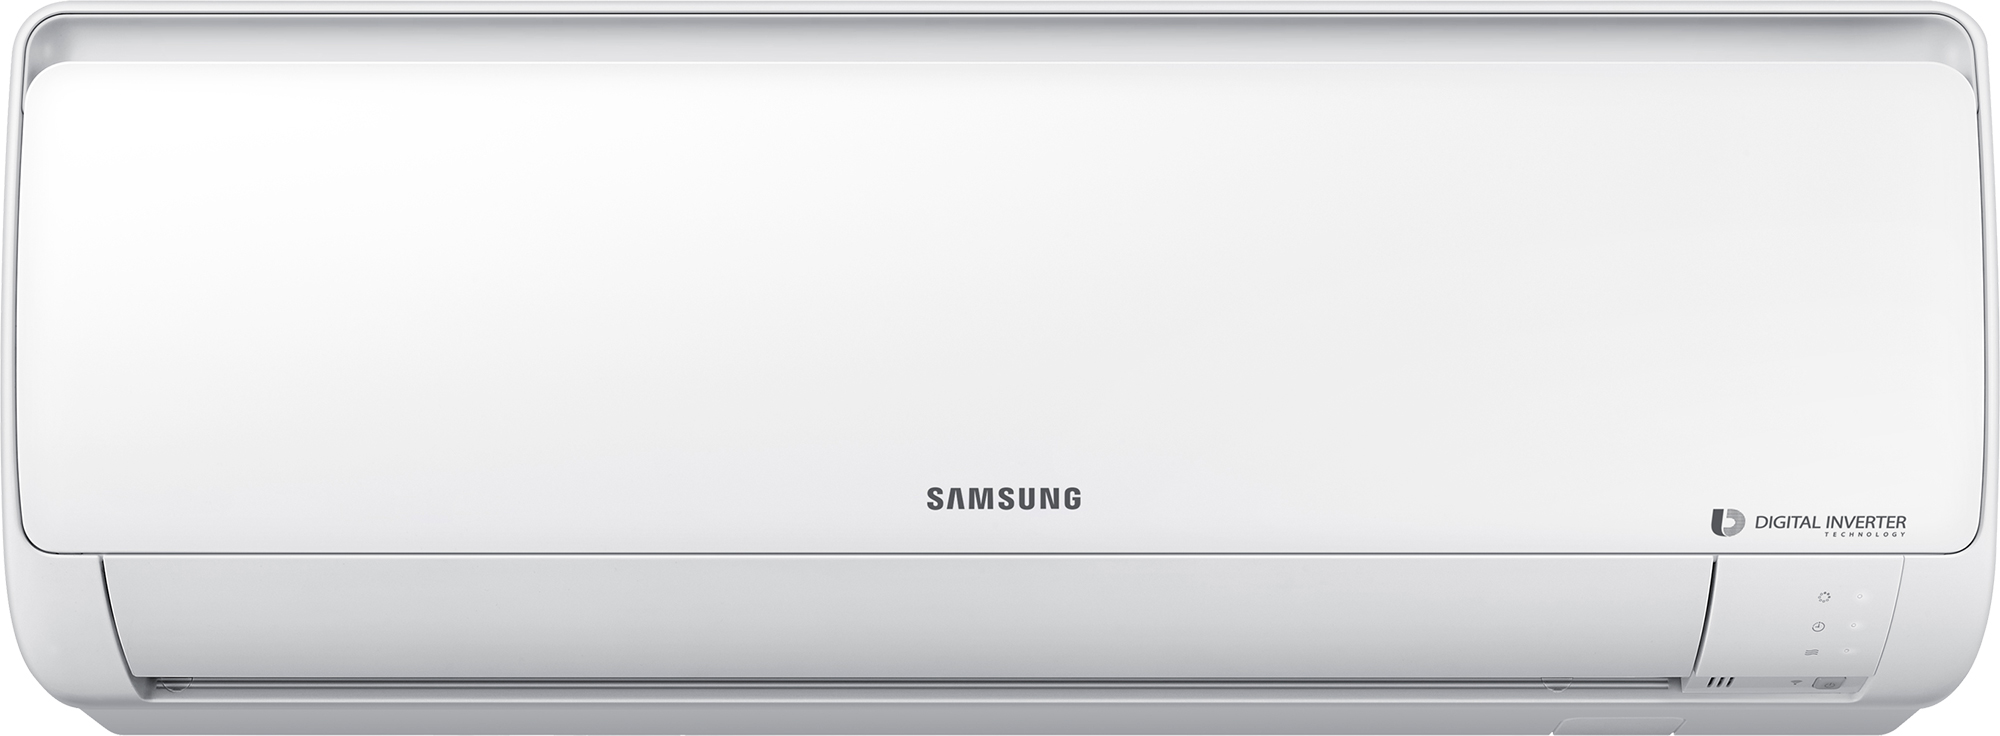 Тепловой насос Samsung воздух-воздух Samsung AR18RSFPAWQNER / AR18RSFPAWQXER